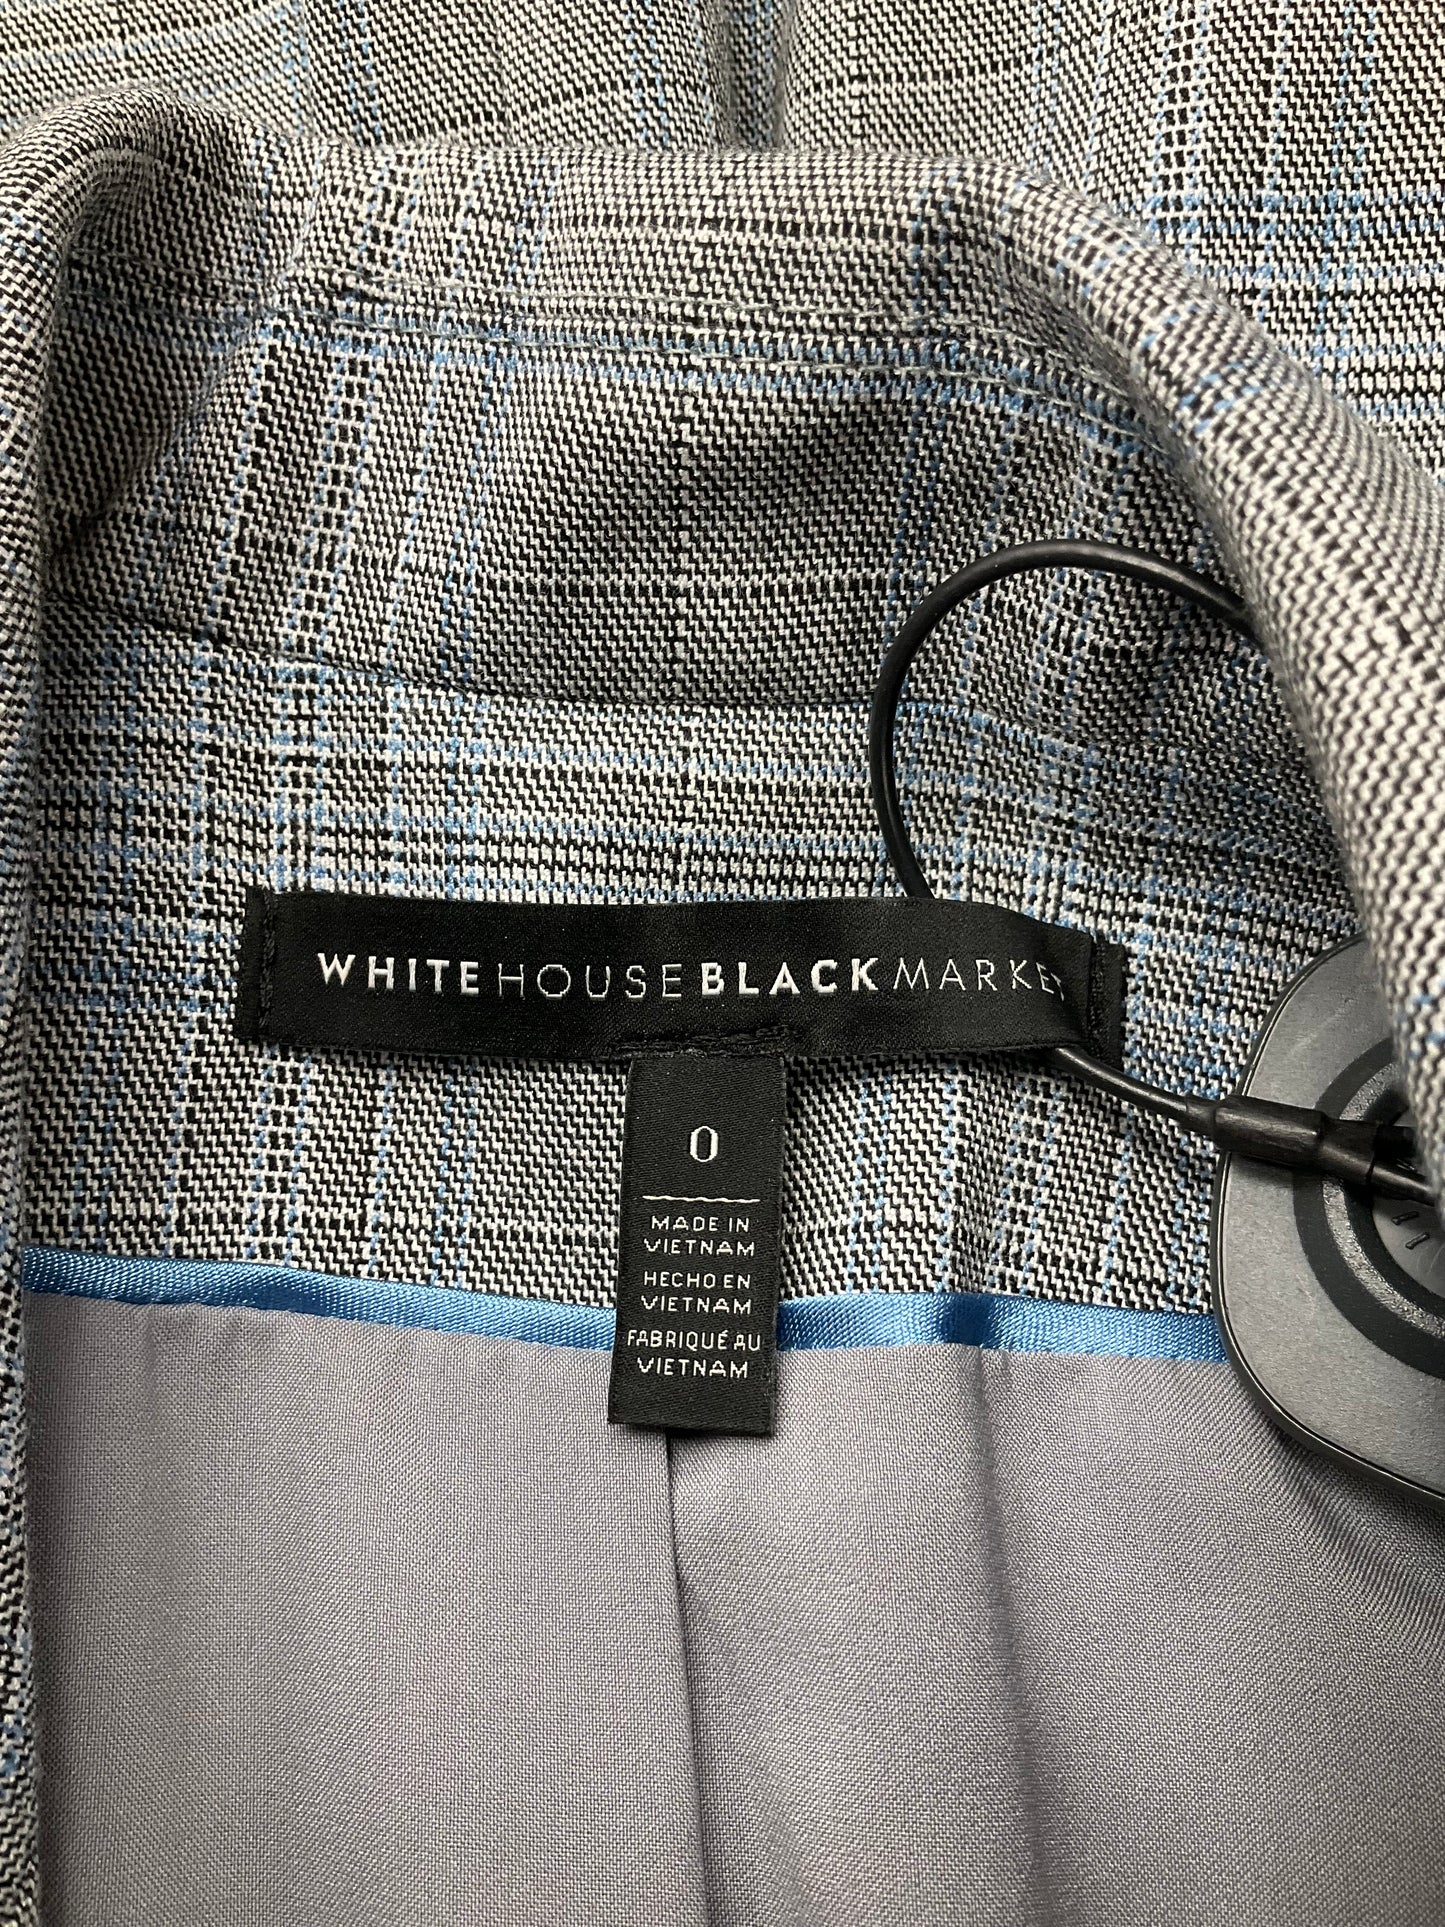 Blazer By White House Black Market O  Size: Xs